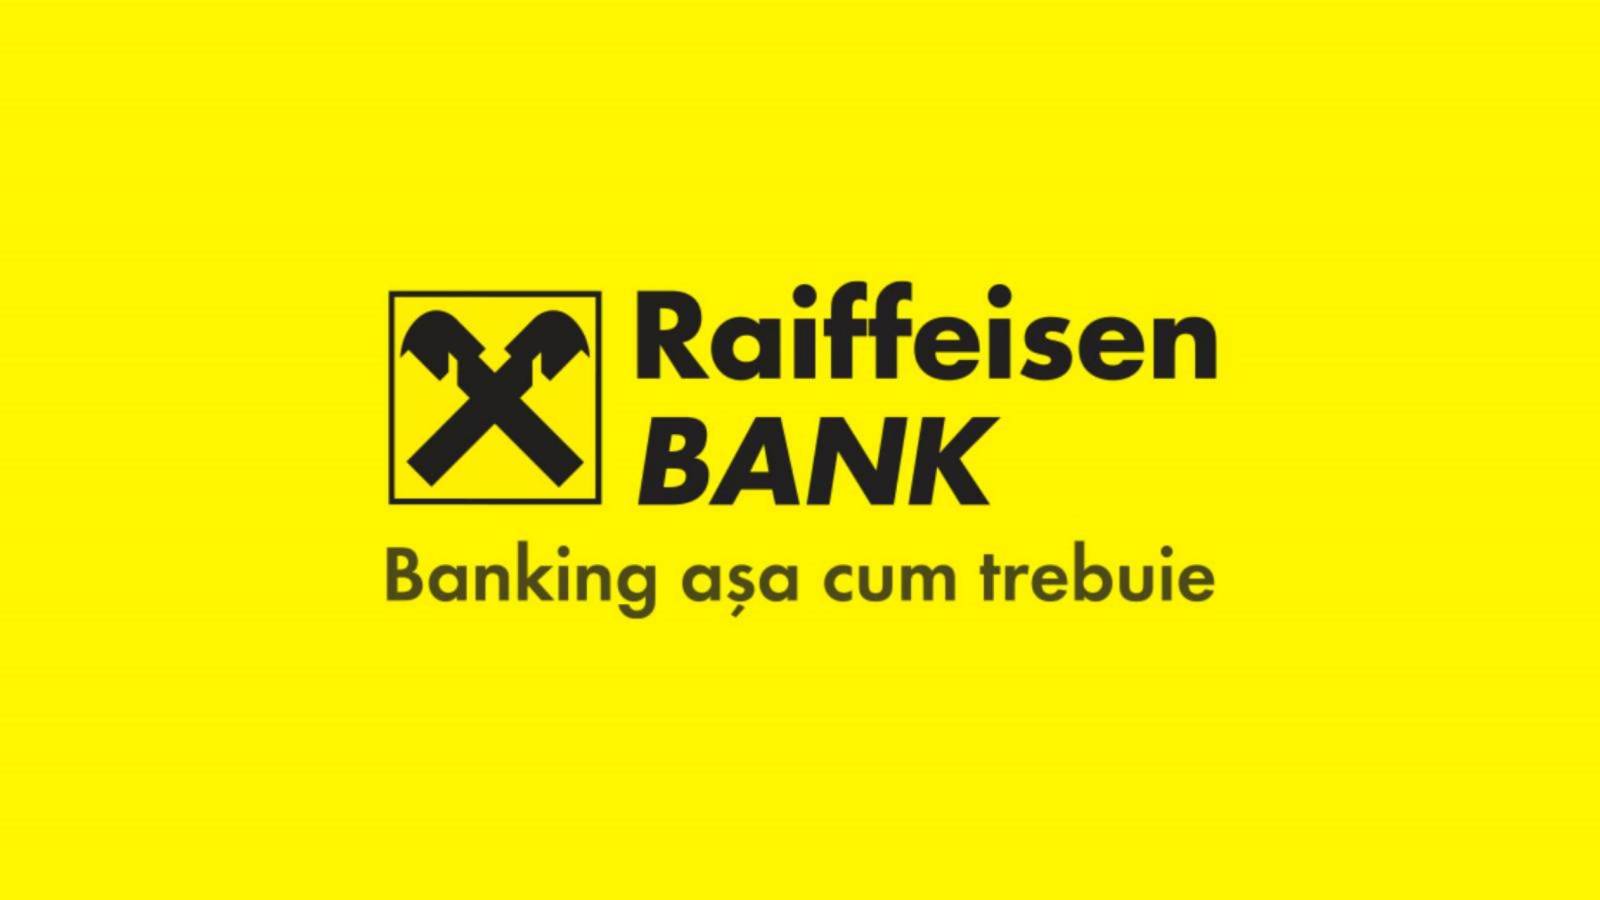 Banca Raiffeisen intelligente